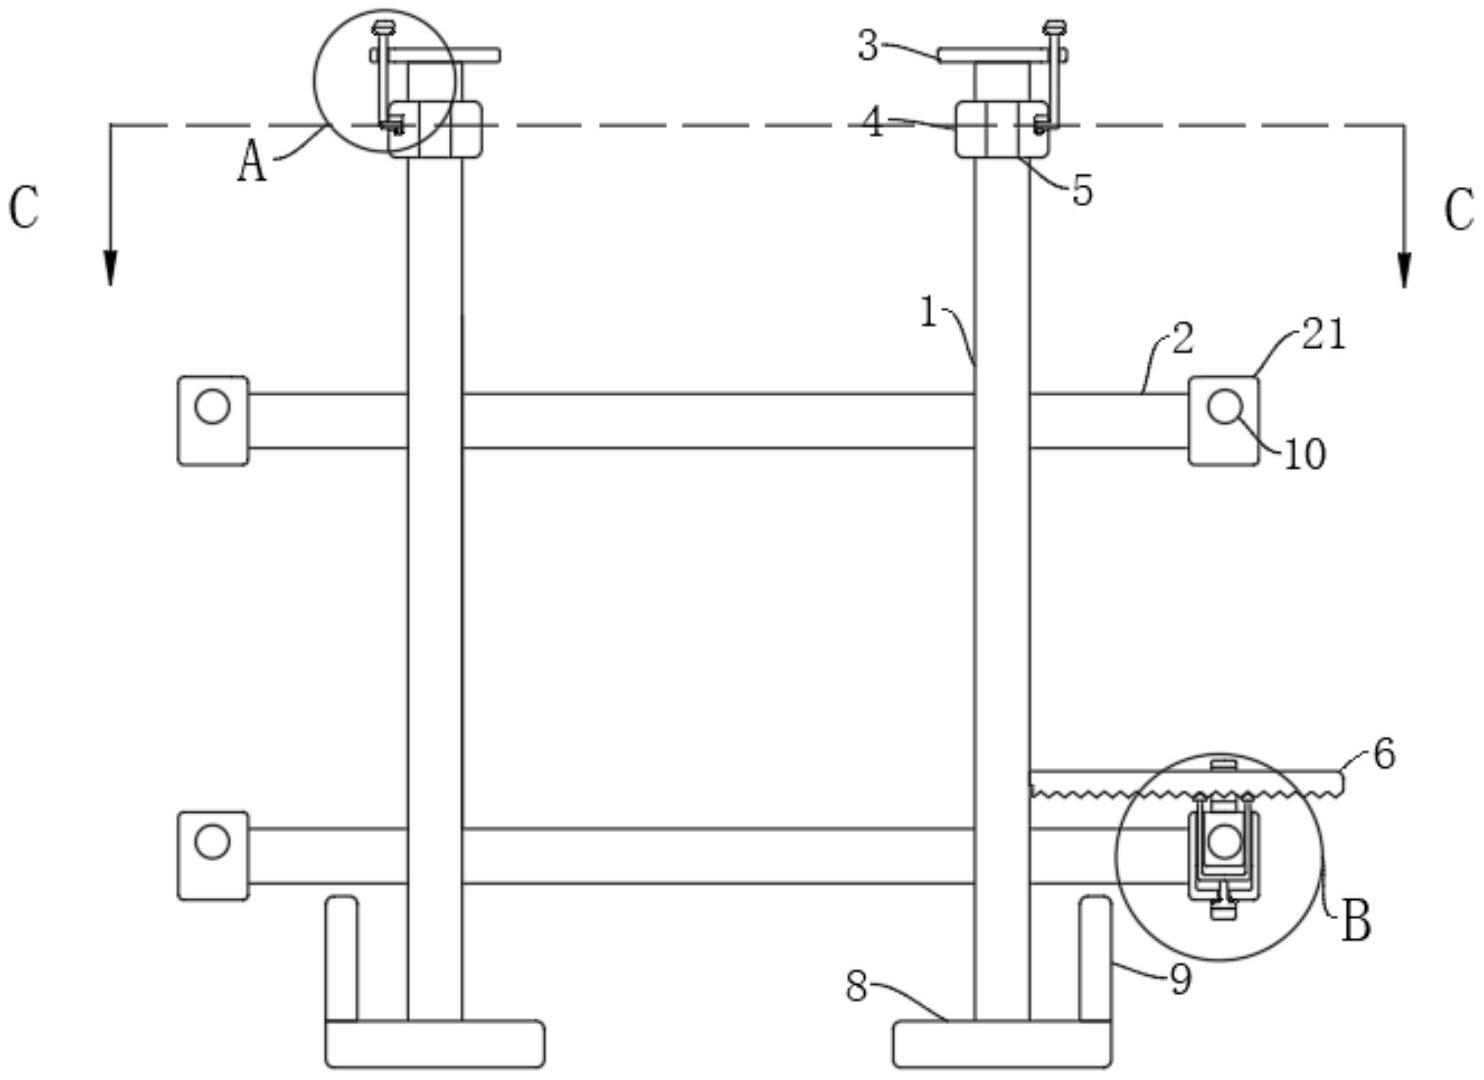 一种锁扣锁紧固定的电暖器挂墙支架-专利